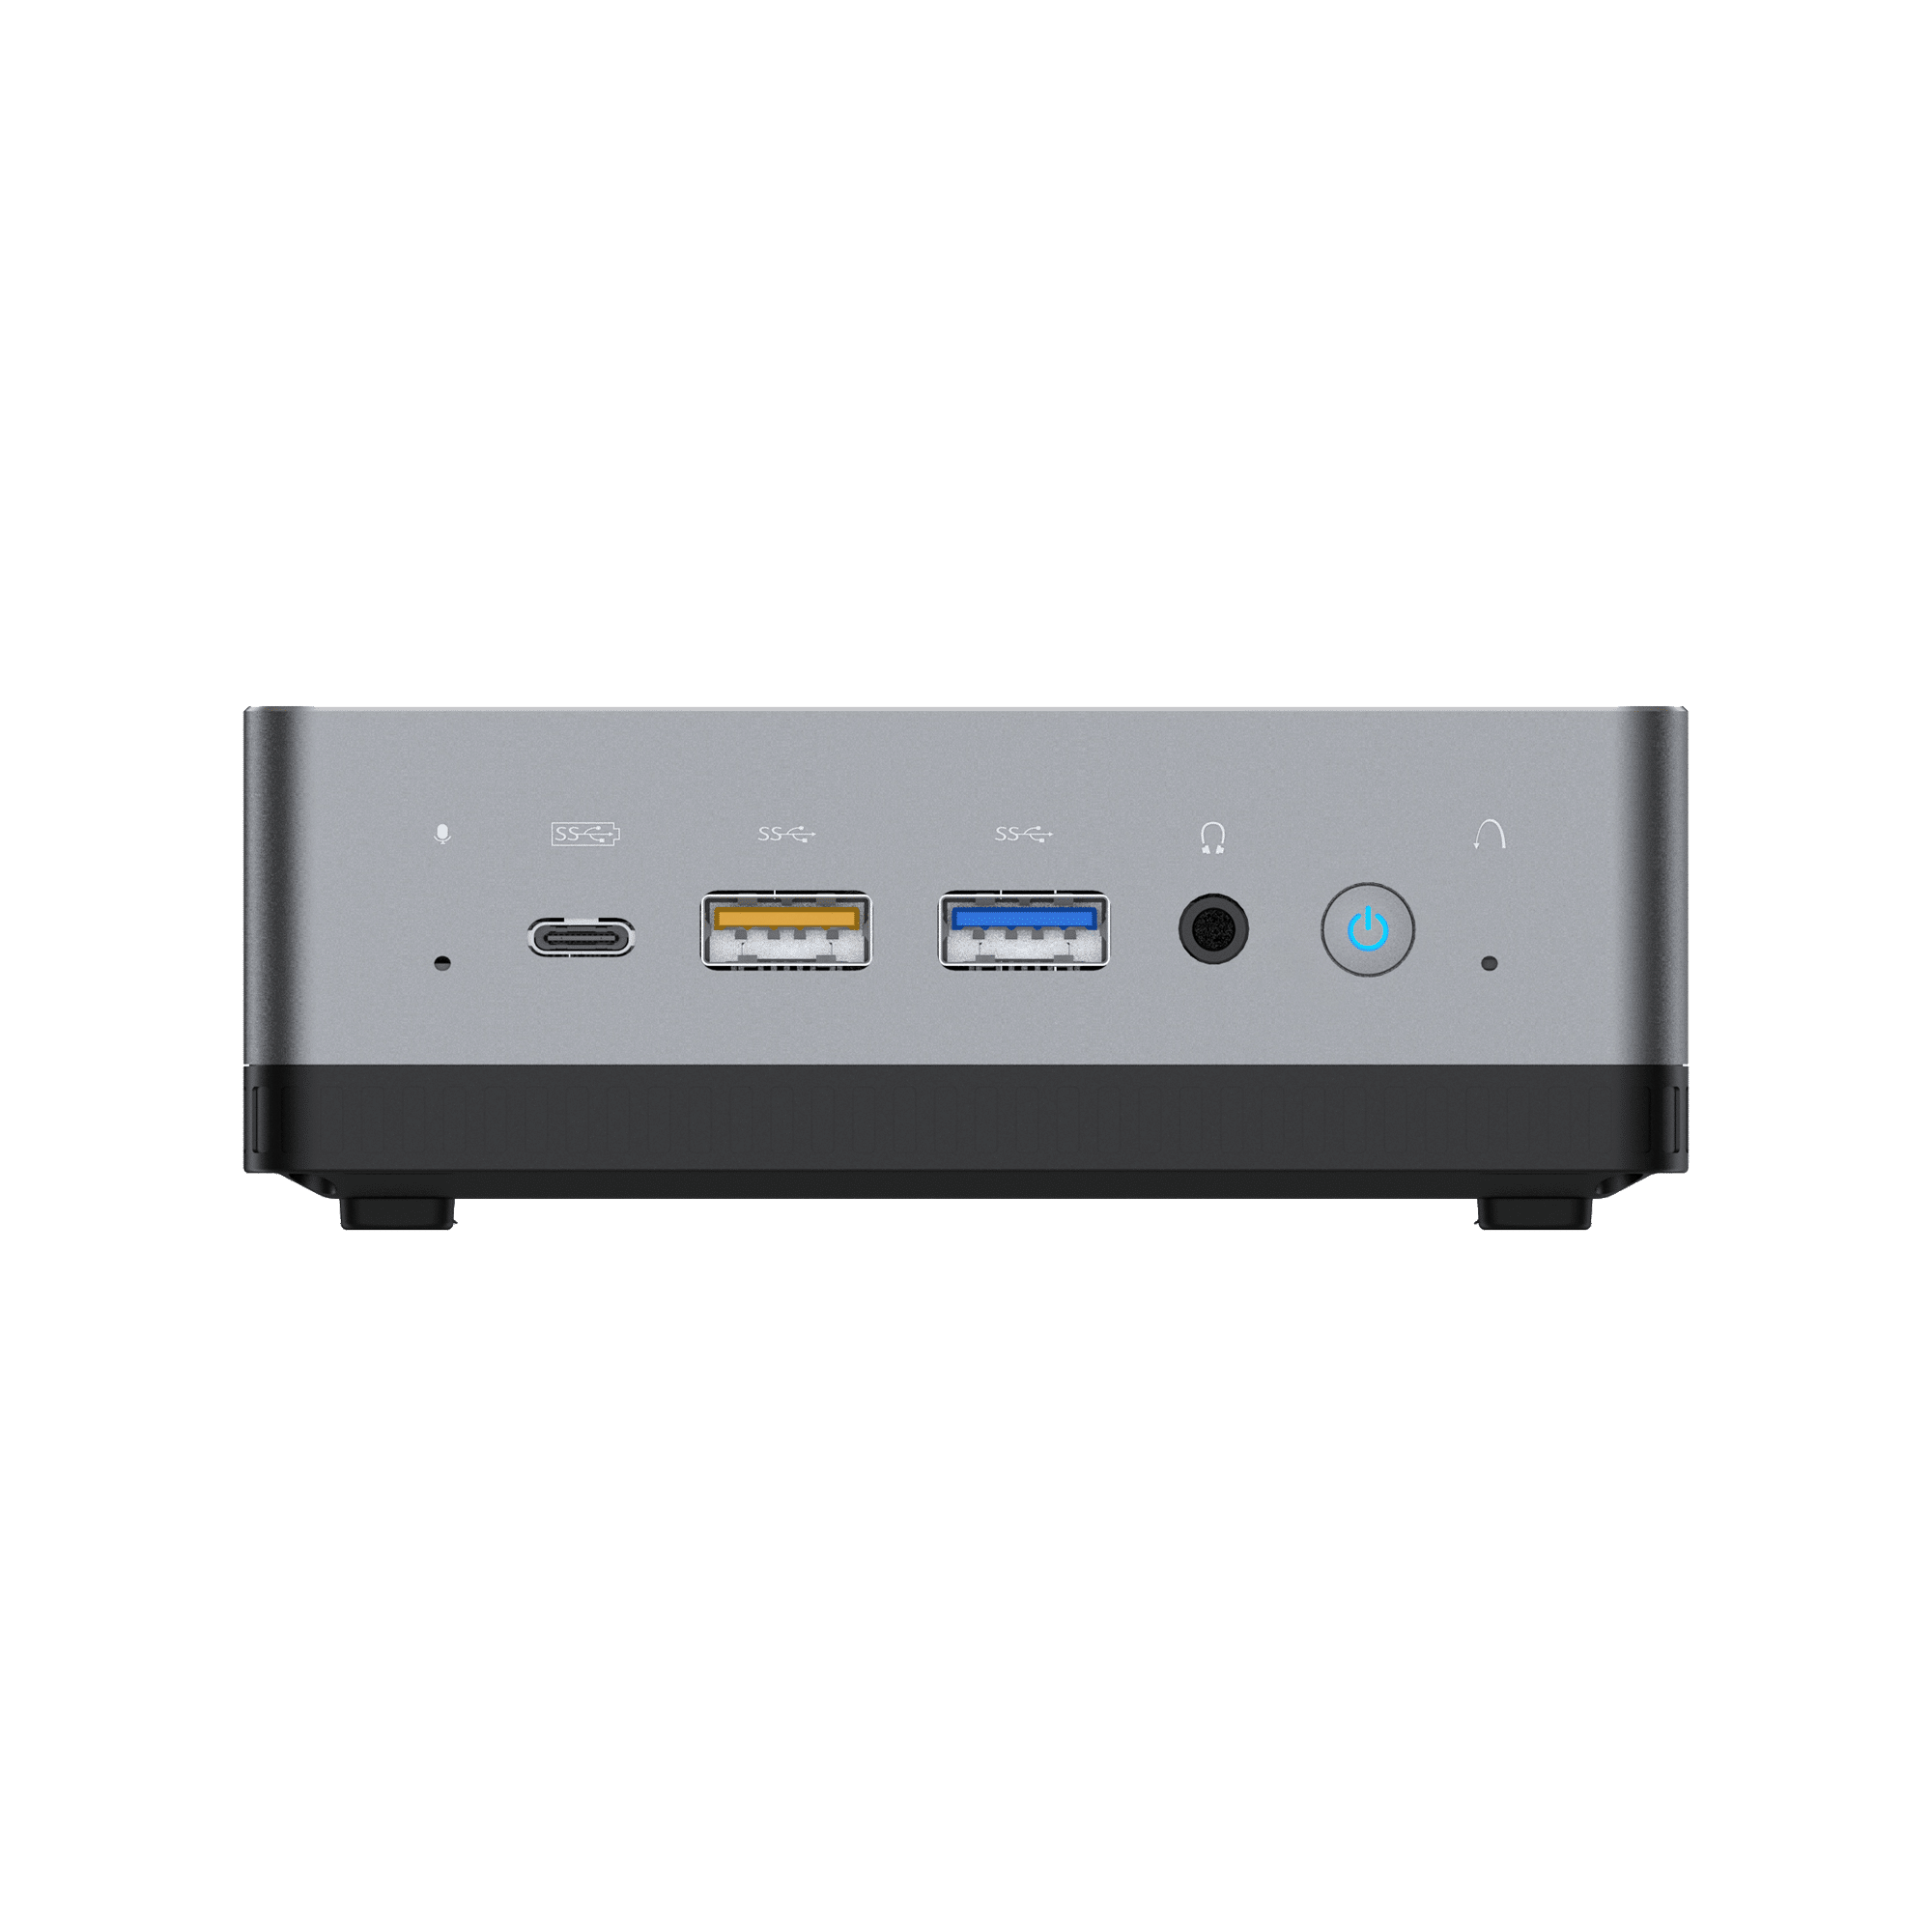 MinisForum EliteMini UM700 - Vue de face avec un port USB Type-C et deux ports USB Type-A, ainsi qu'une prise combinée casque/microphone de 3,5 mm et un bouton d'alimentation.